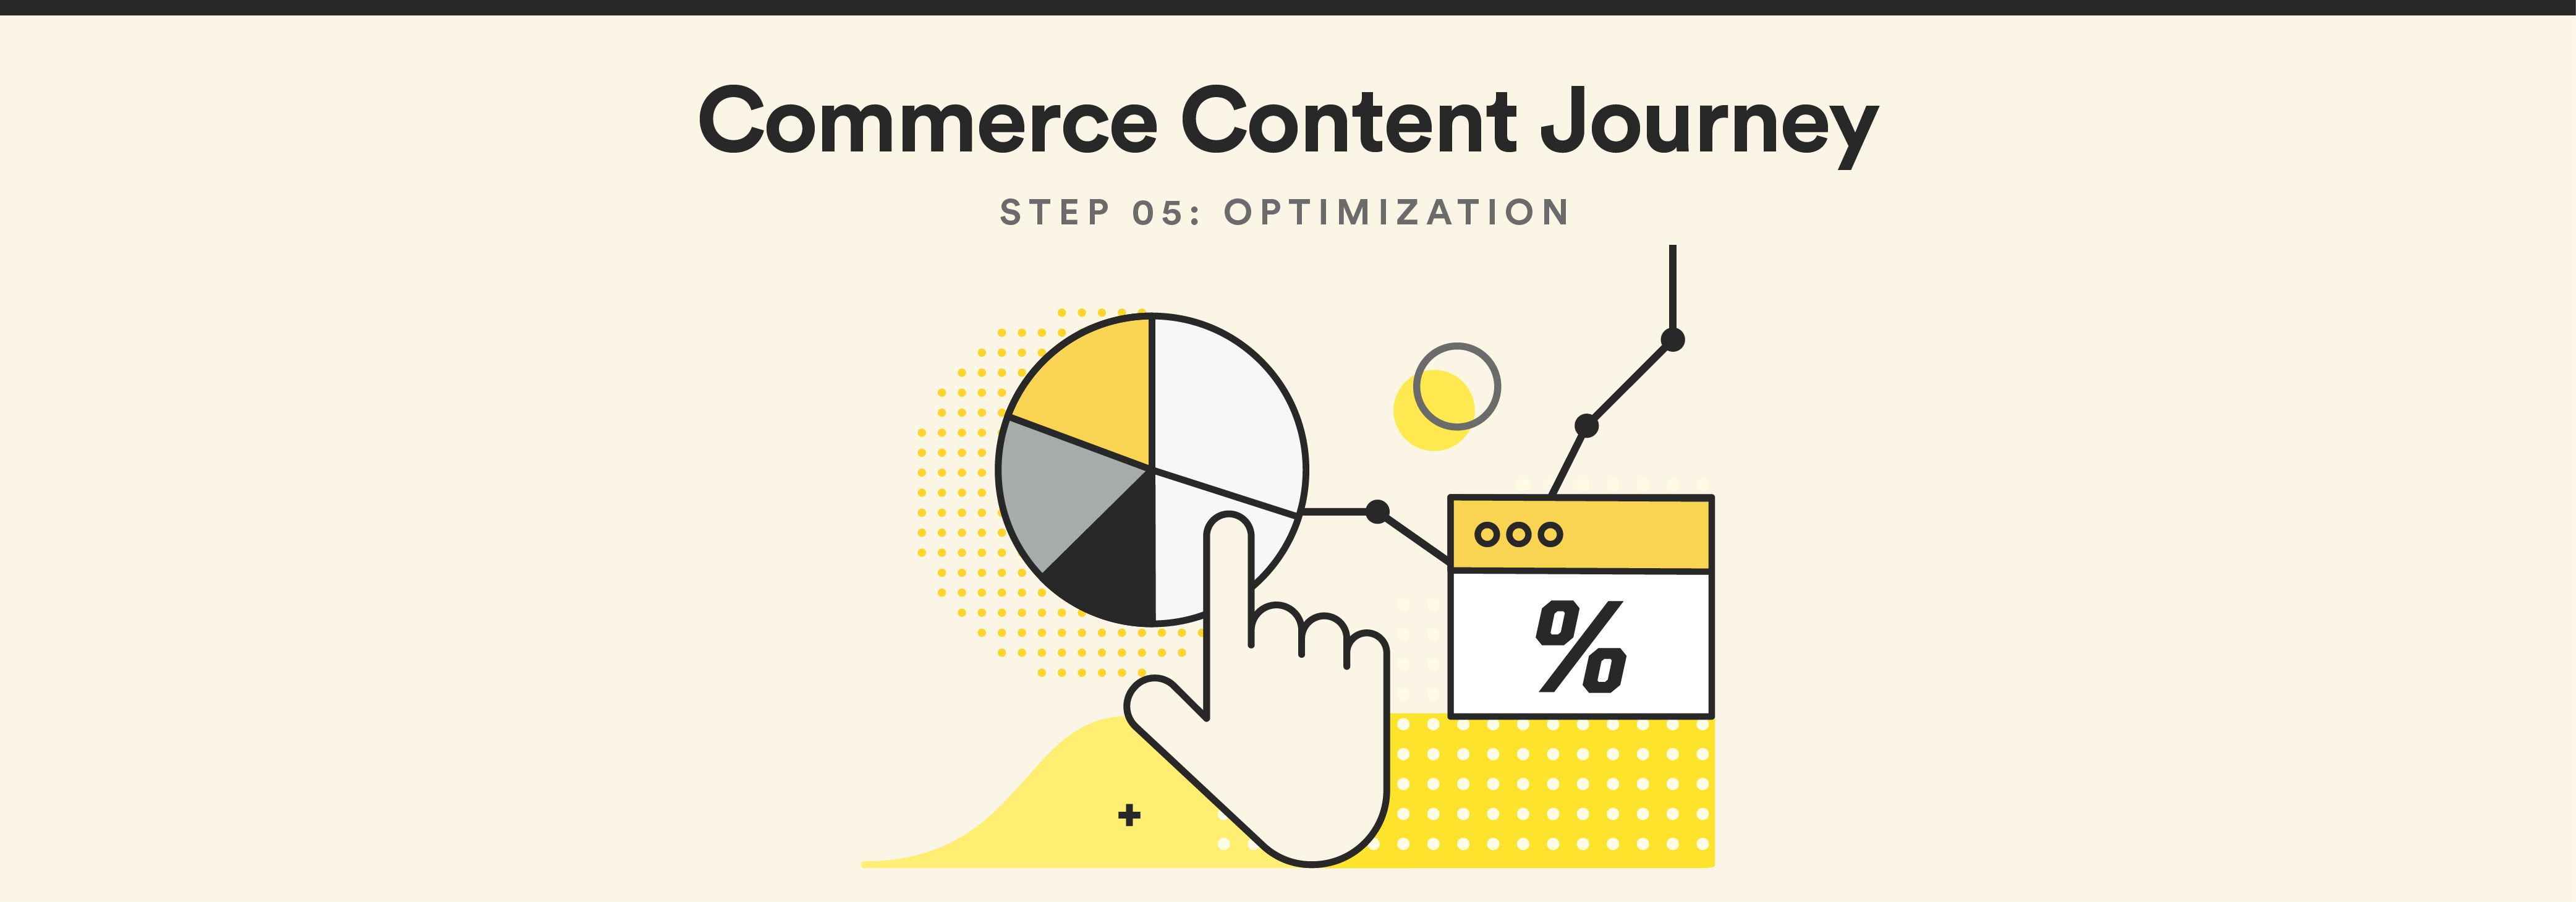 Commerce Content Journey: Optimization